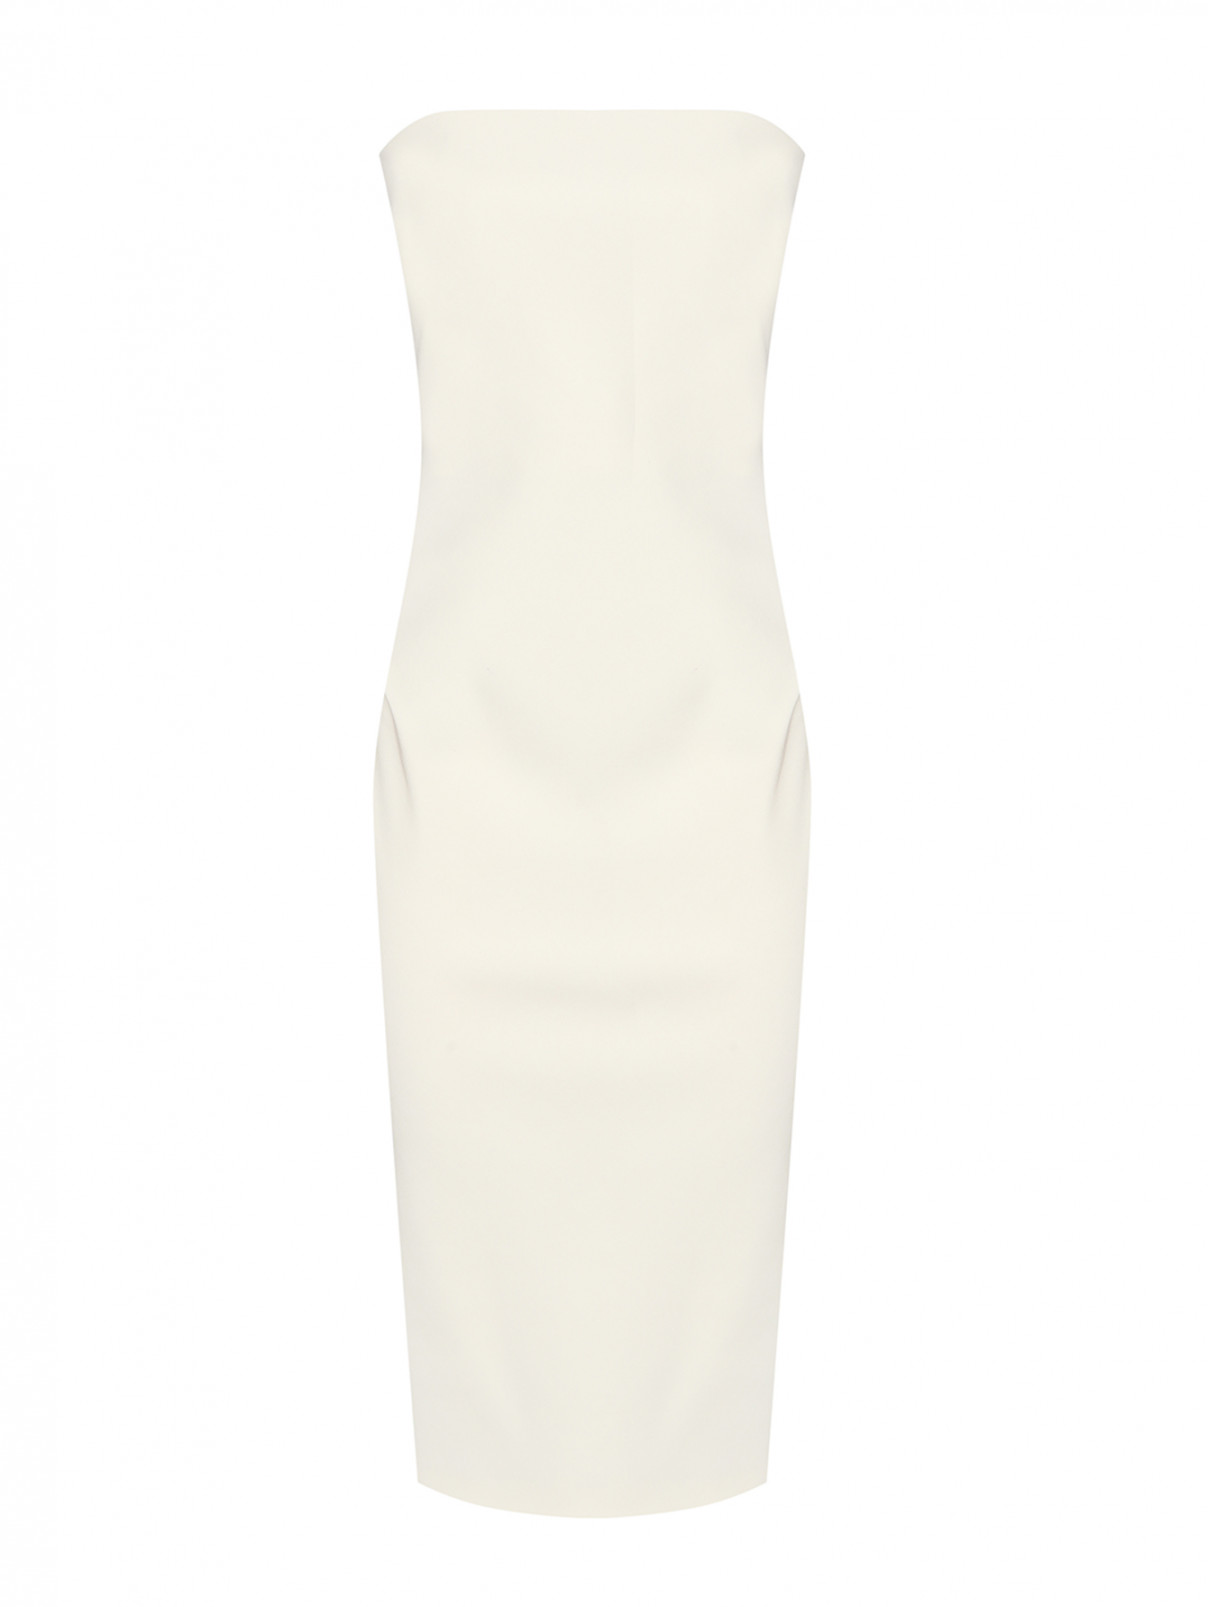 Однотонное платье из шерсти Max Mara  –  Общий вид  – Цвет:  Белый